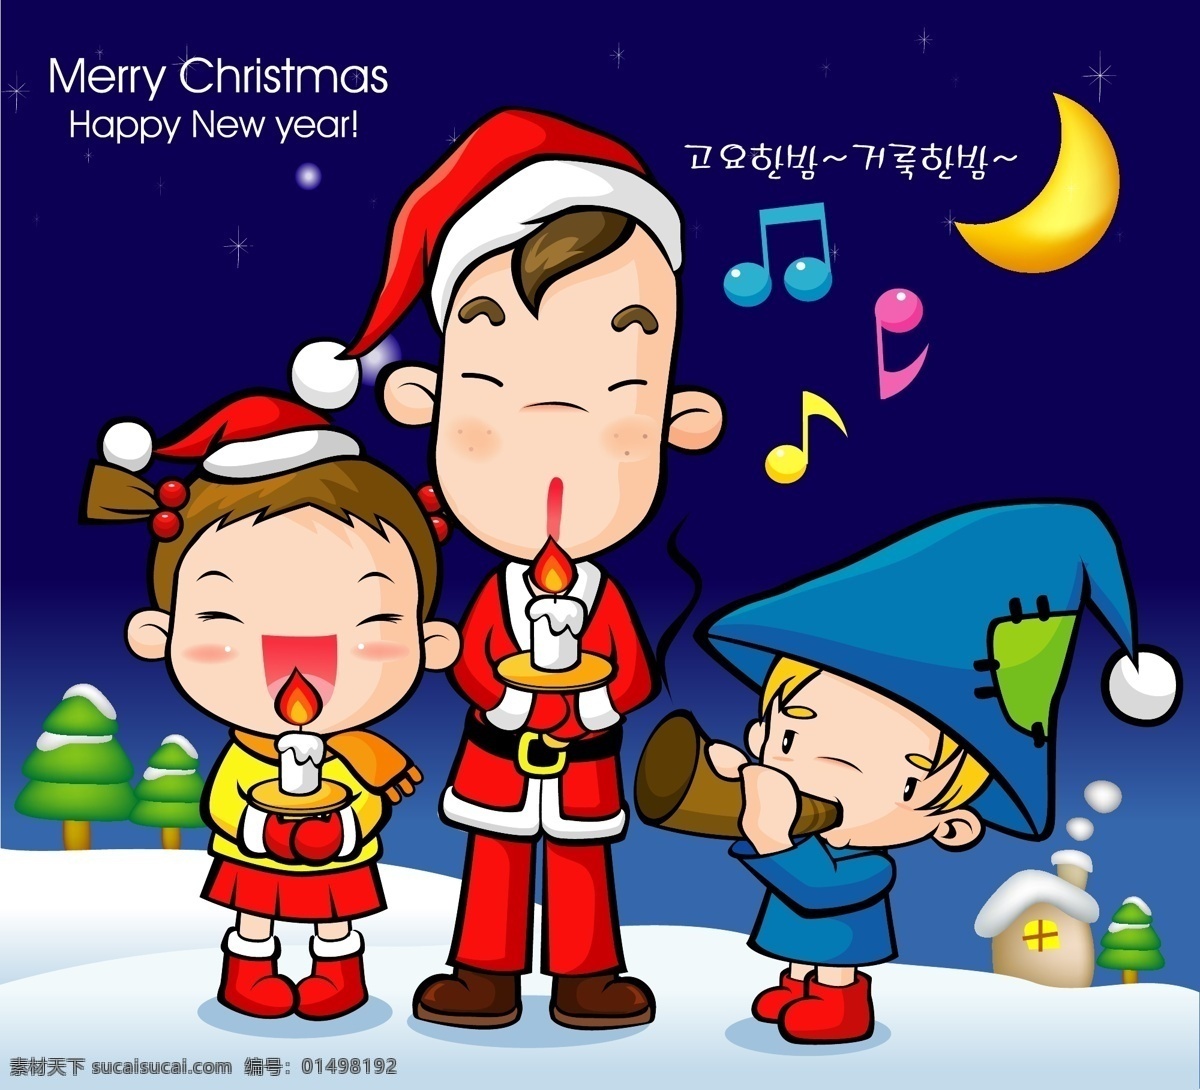 韩国 三个 孩子 庆祝 圣诞 矢量图 模板 设计稿 圣诞节 源文件 三个孩子 庆祝圣诞 节日大全 节日素材